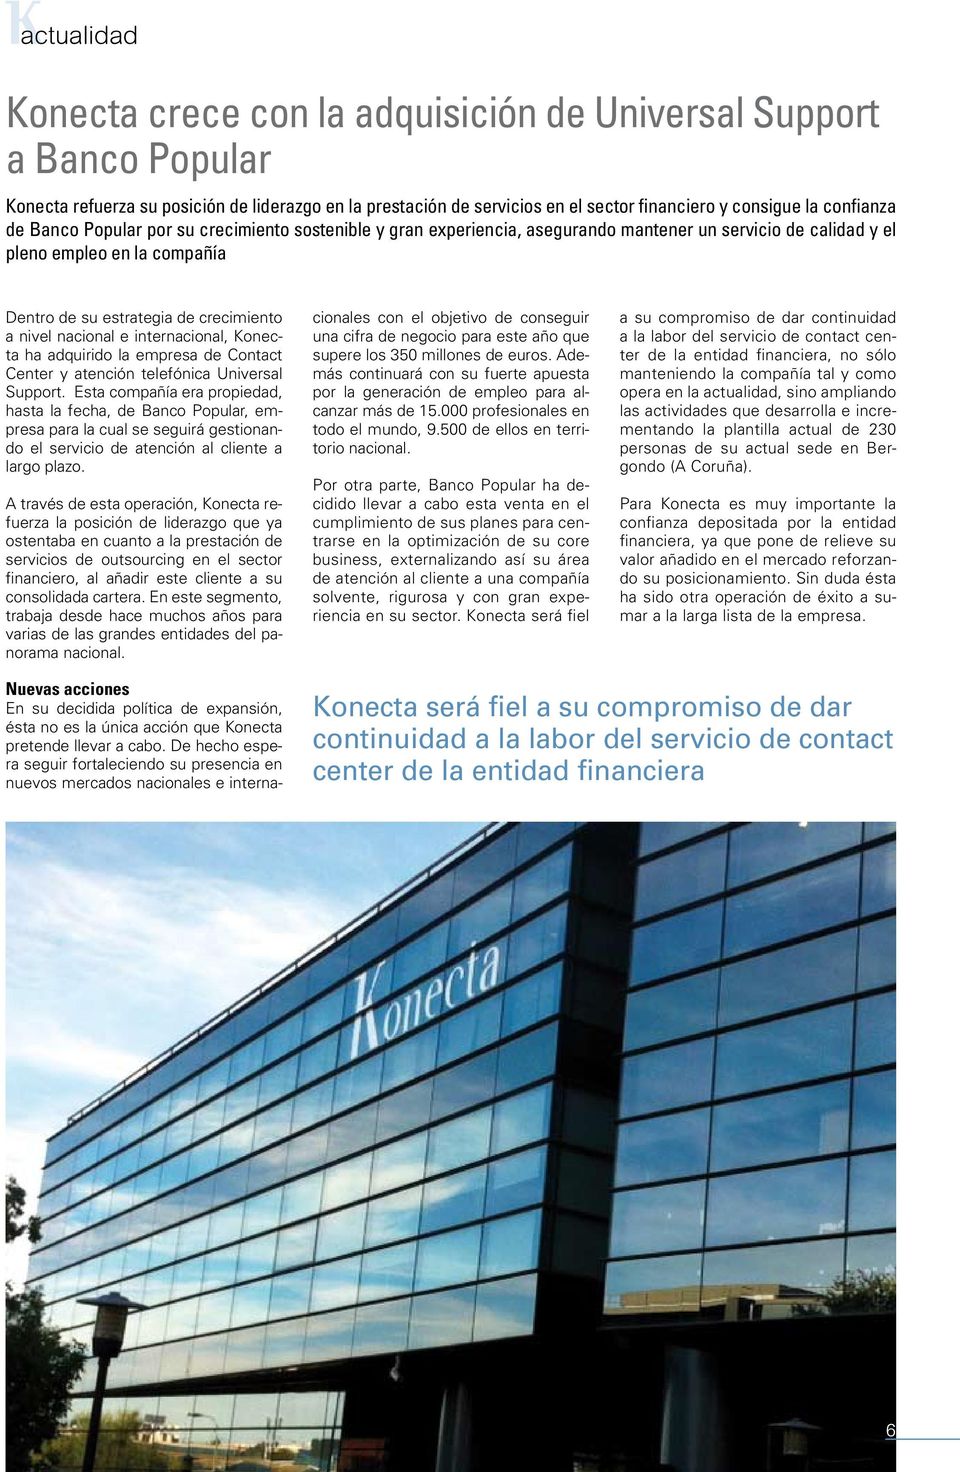 nacional e internacional, Konecta ha adquirido la empresa de Contact Center y atención telefónica Universal Support.